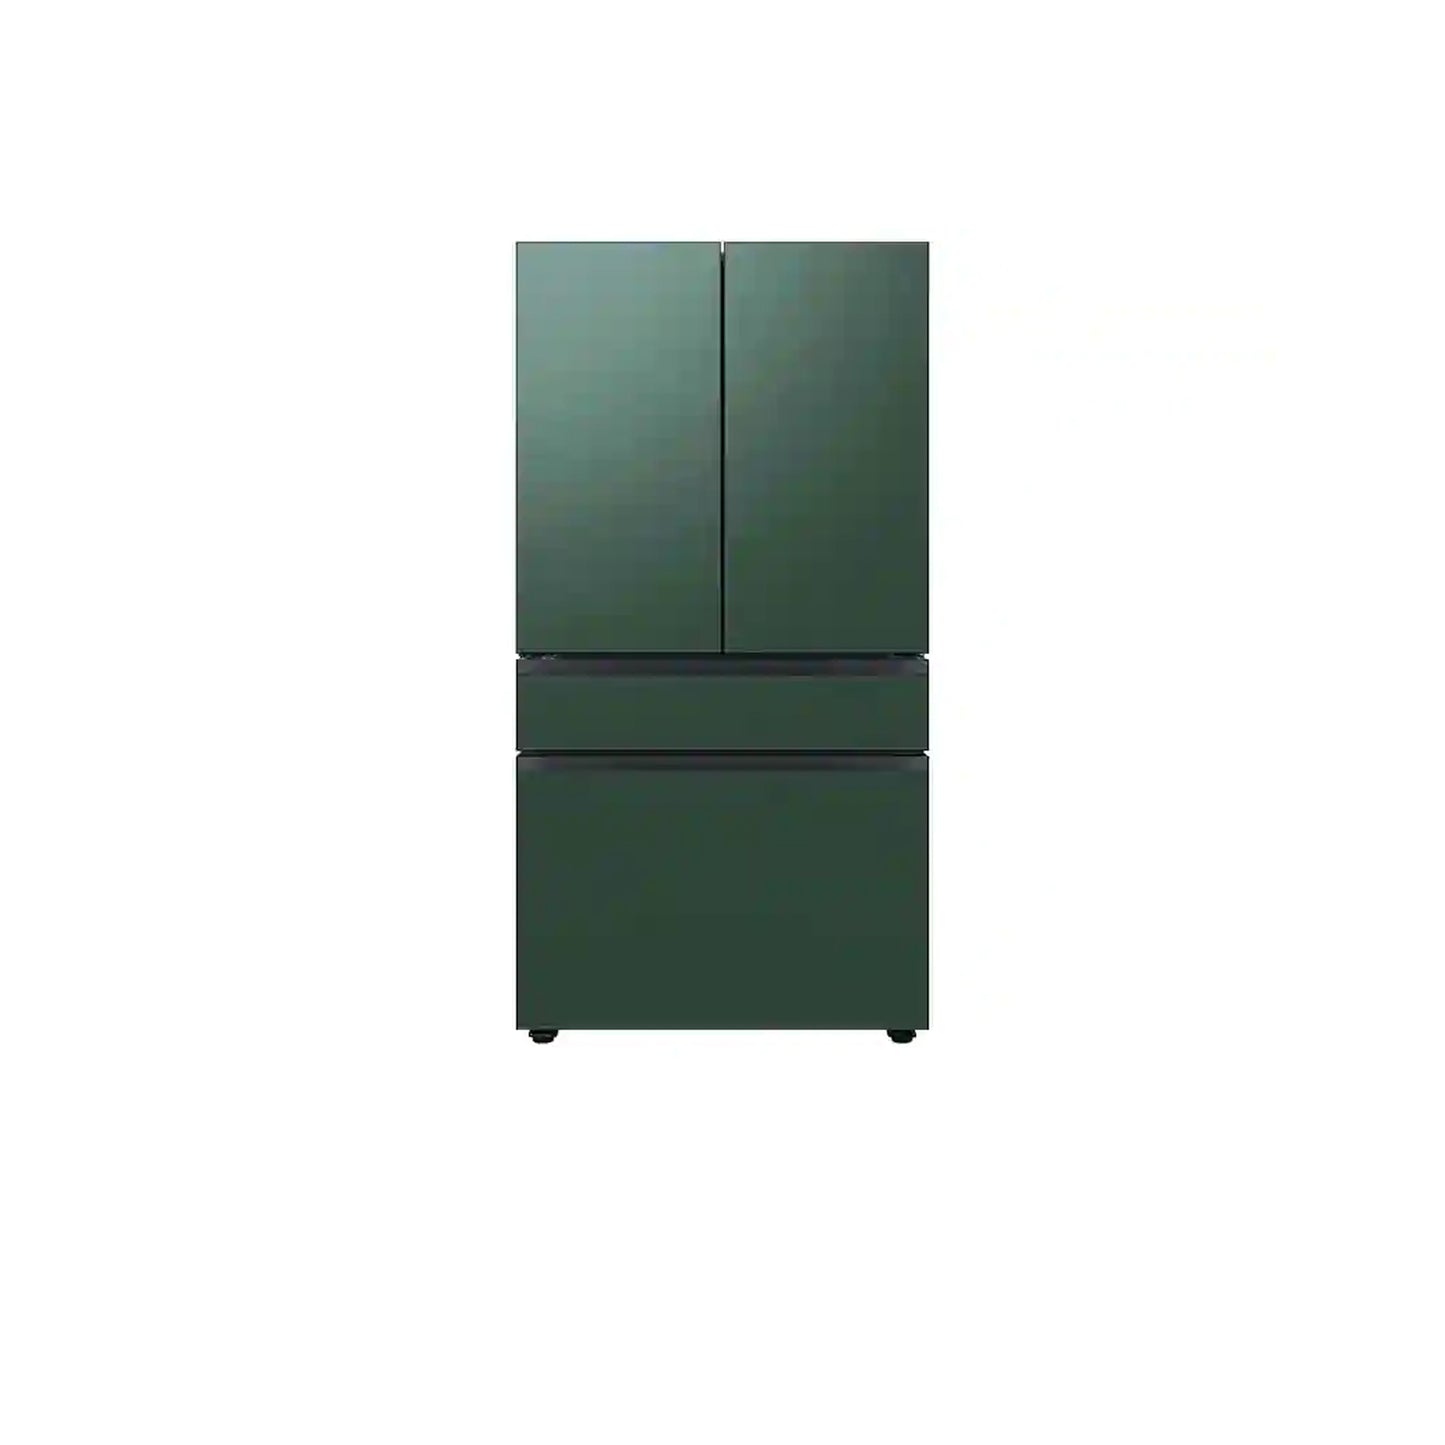 ثلاجة بباب فرنسي بأربعة أبواب مخصصة (23 قدمًا مكعبًا) مع ألوان لوحة الباب القابلة للتخصيص ومركز المشروبات™ بسطح فولاذي باللون الأخضر الزمردي، ووسط زجاجي أبيض، وألواح سفلية من زجاج كليمنتين. 